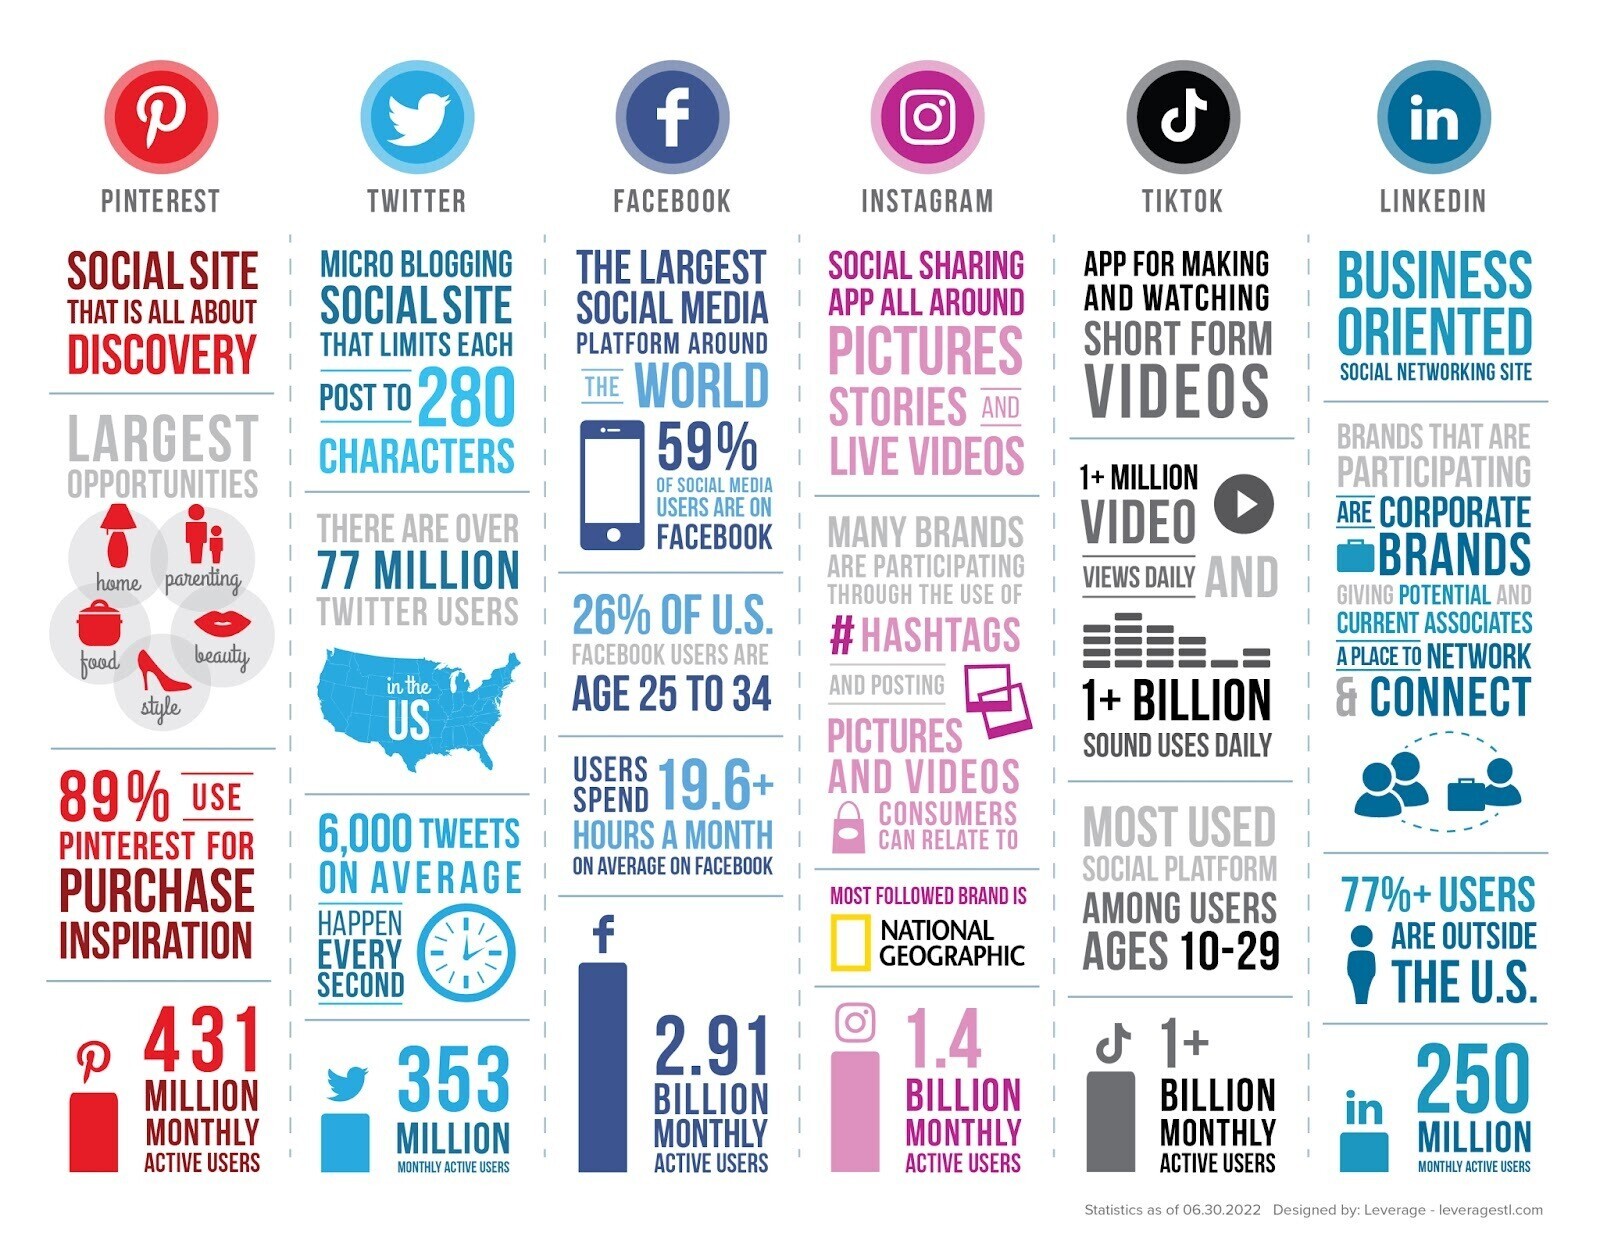 Infographie de Leverage comparant les plateformes de médias sociaux les plus populaires